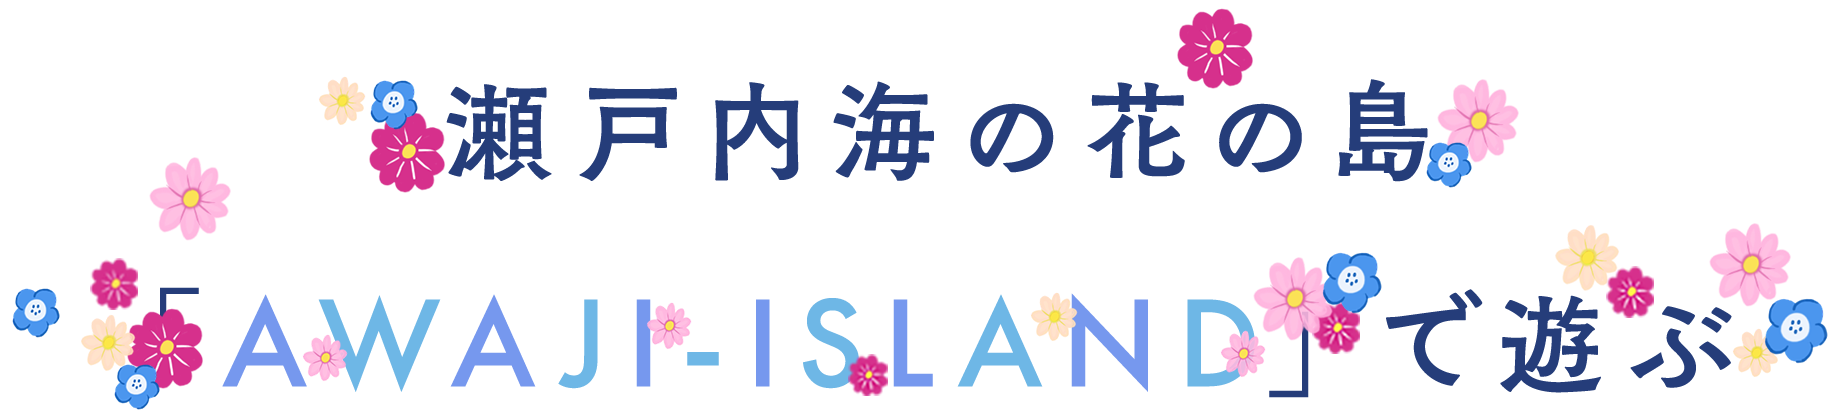 瀬戸内海の花の島「AWAJI-ISLAND」で遊ぶ